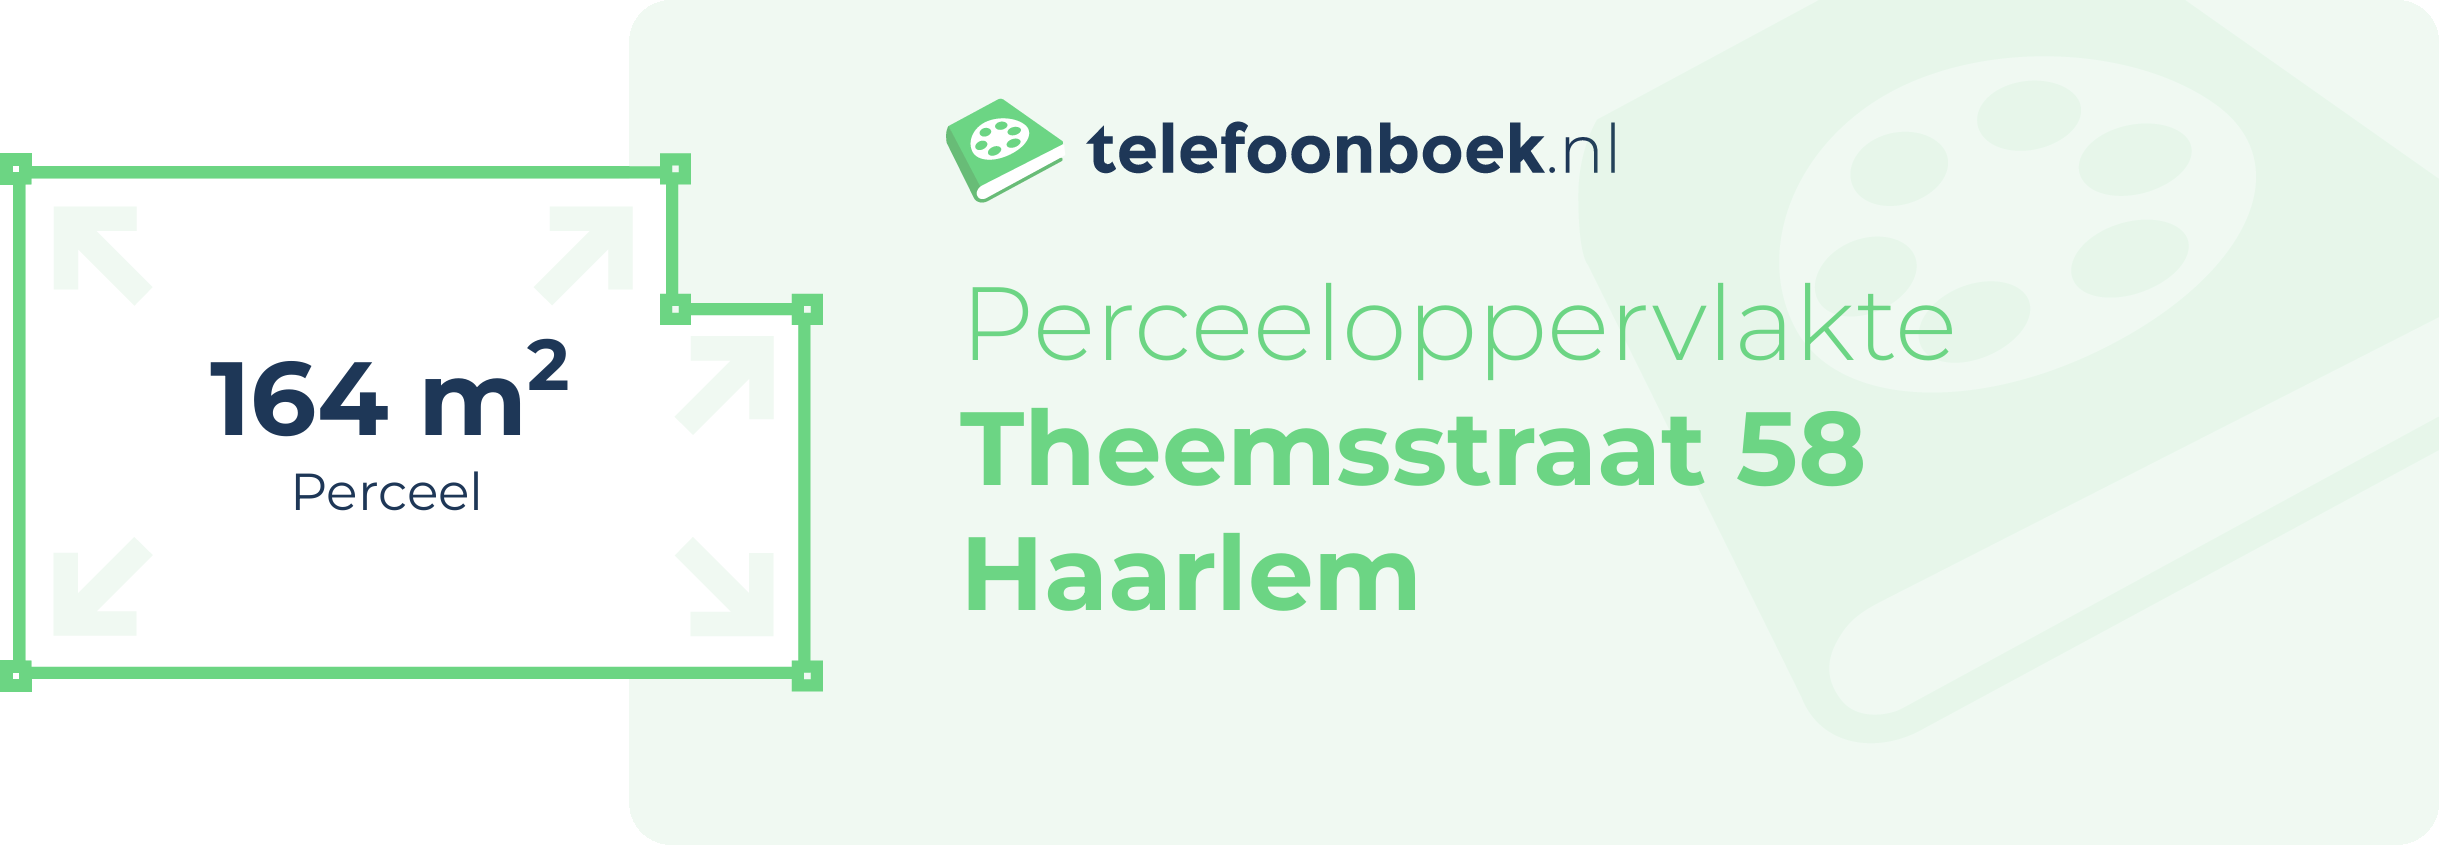 Perceeloppervlakte Theemsstraat 58 Haarlem